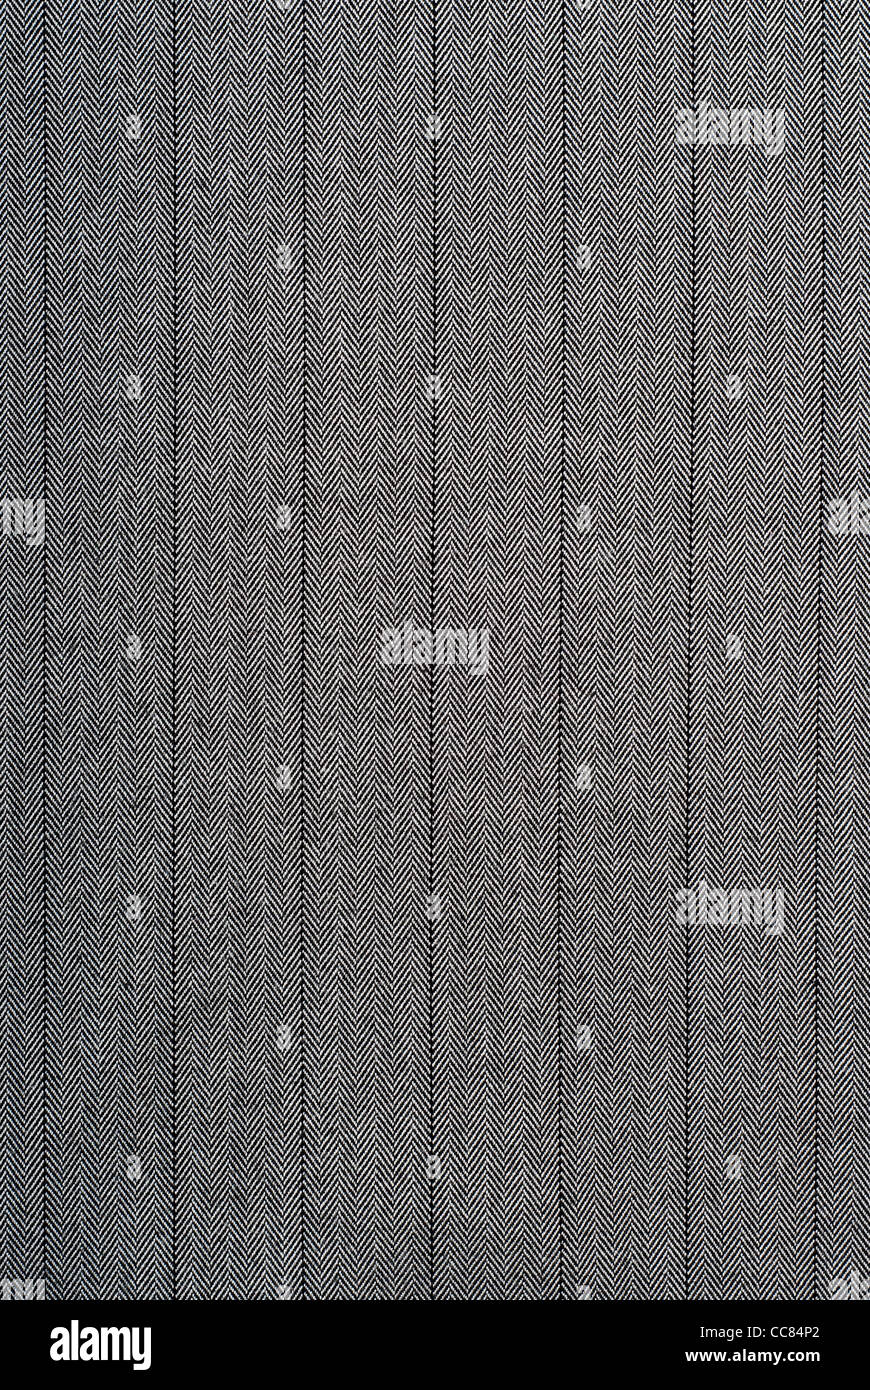 Primer plano de una tela a rayas en blanco y negro como una textura adecuada Foto de stock